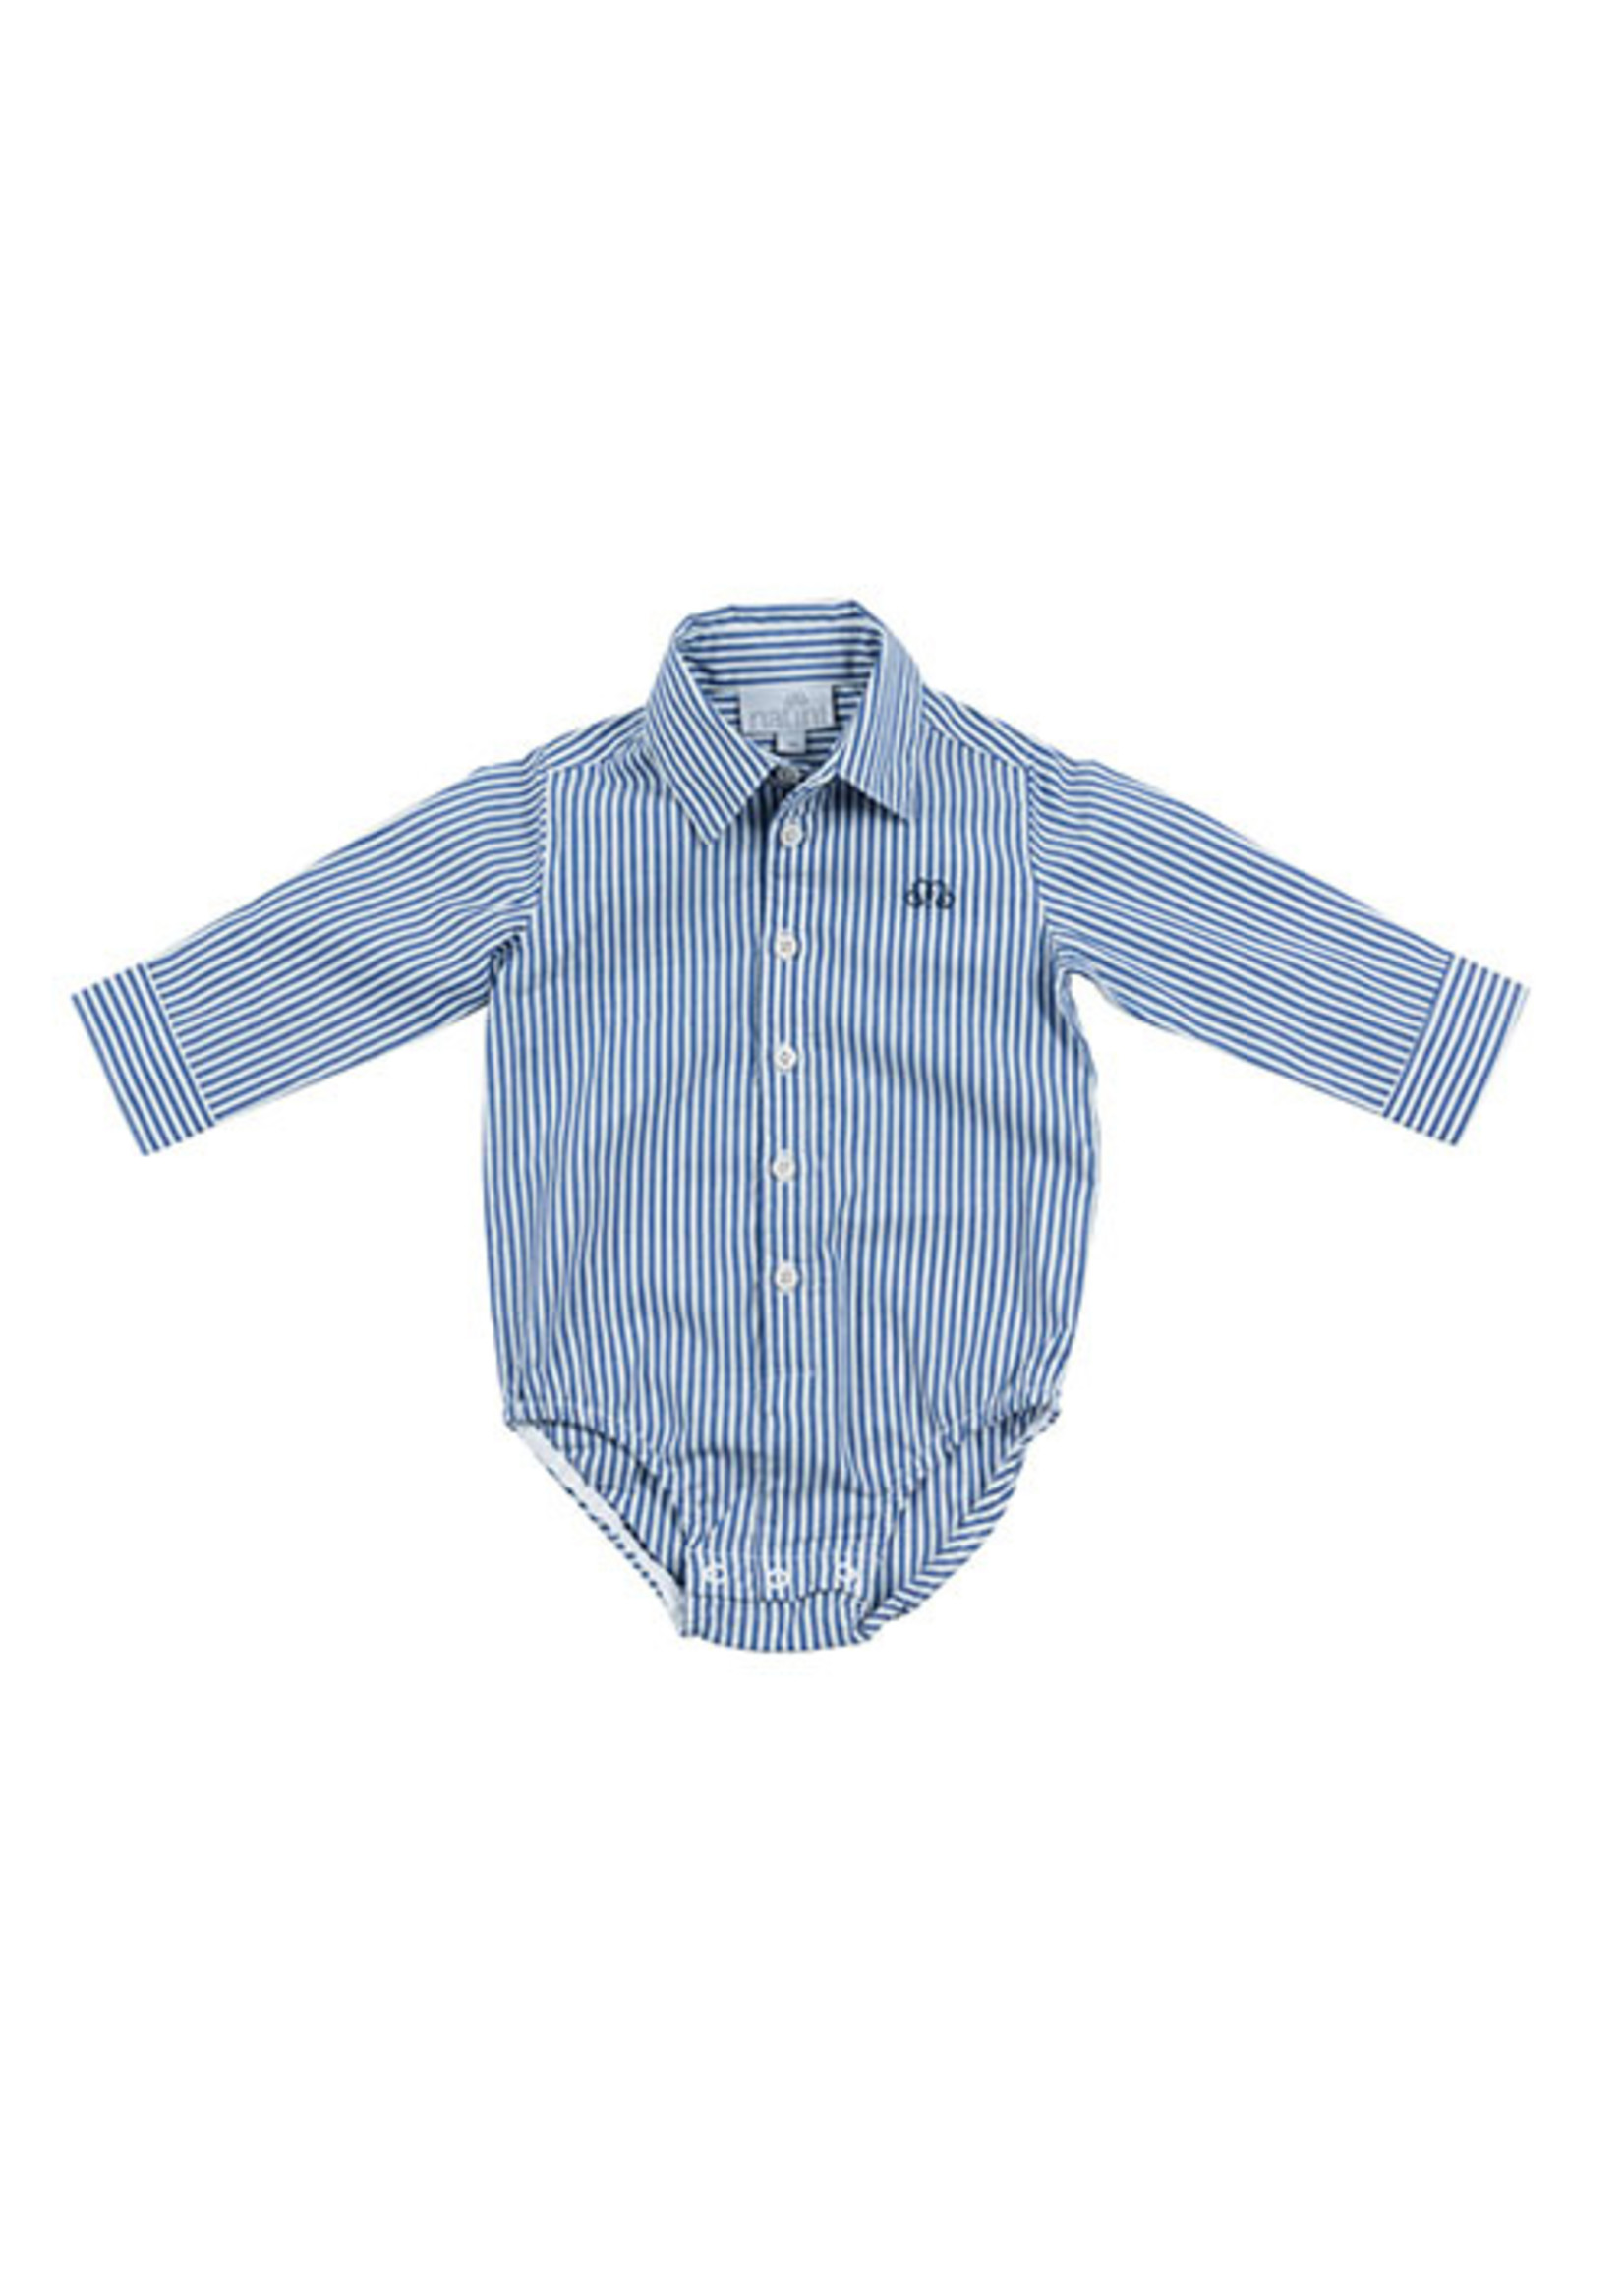 Natini Natini Babyboy body shirt hemd pierrot stripes navy blue - 1200 00002 0045